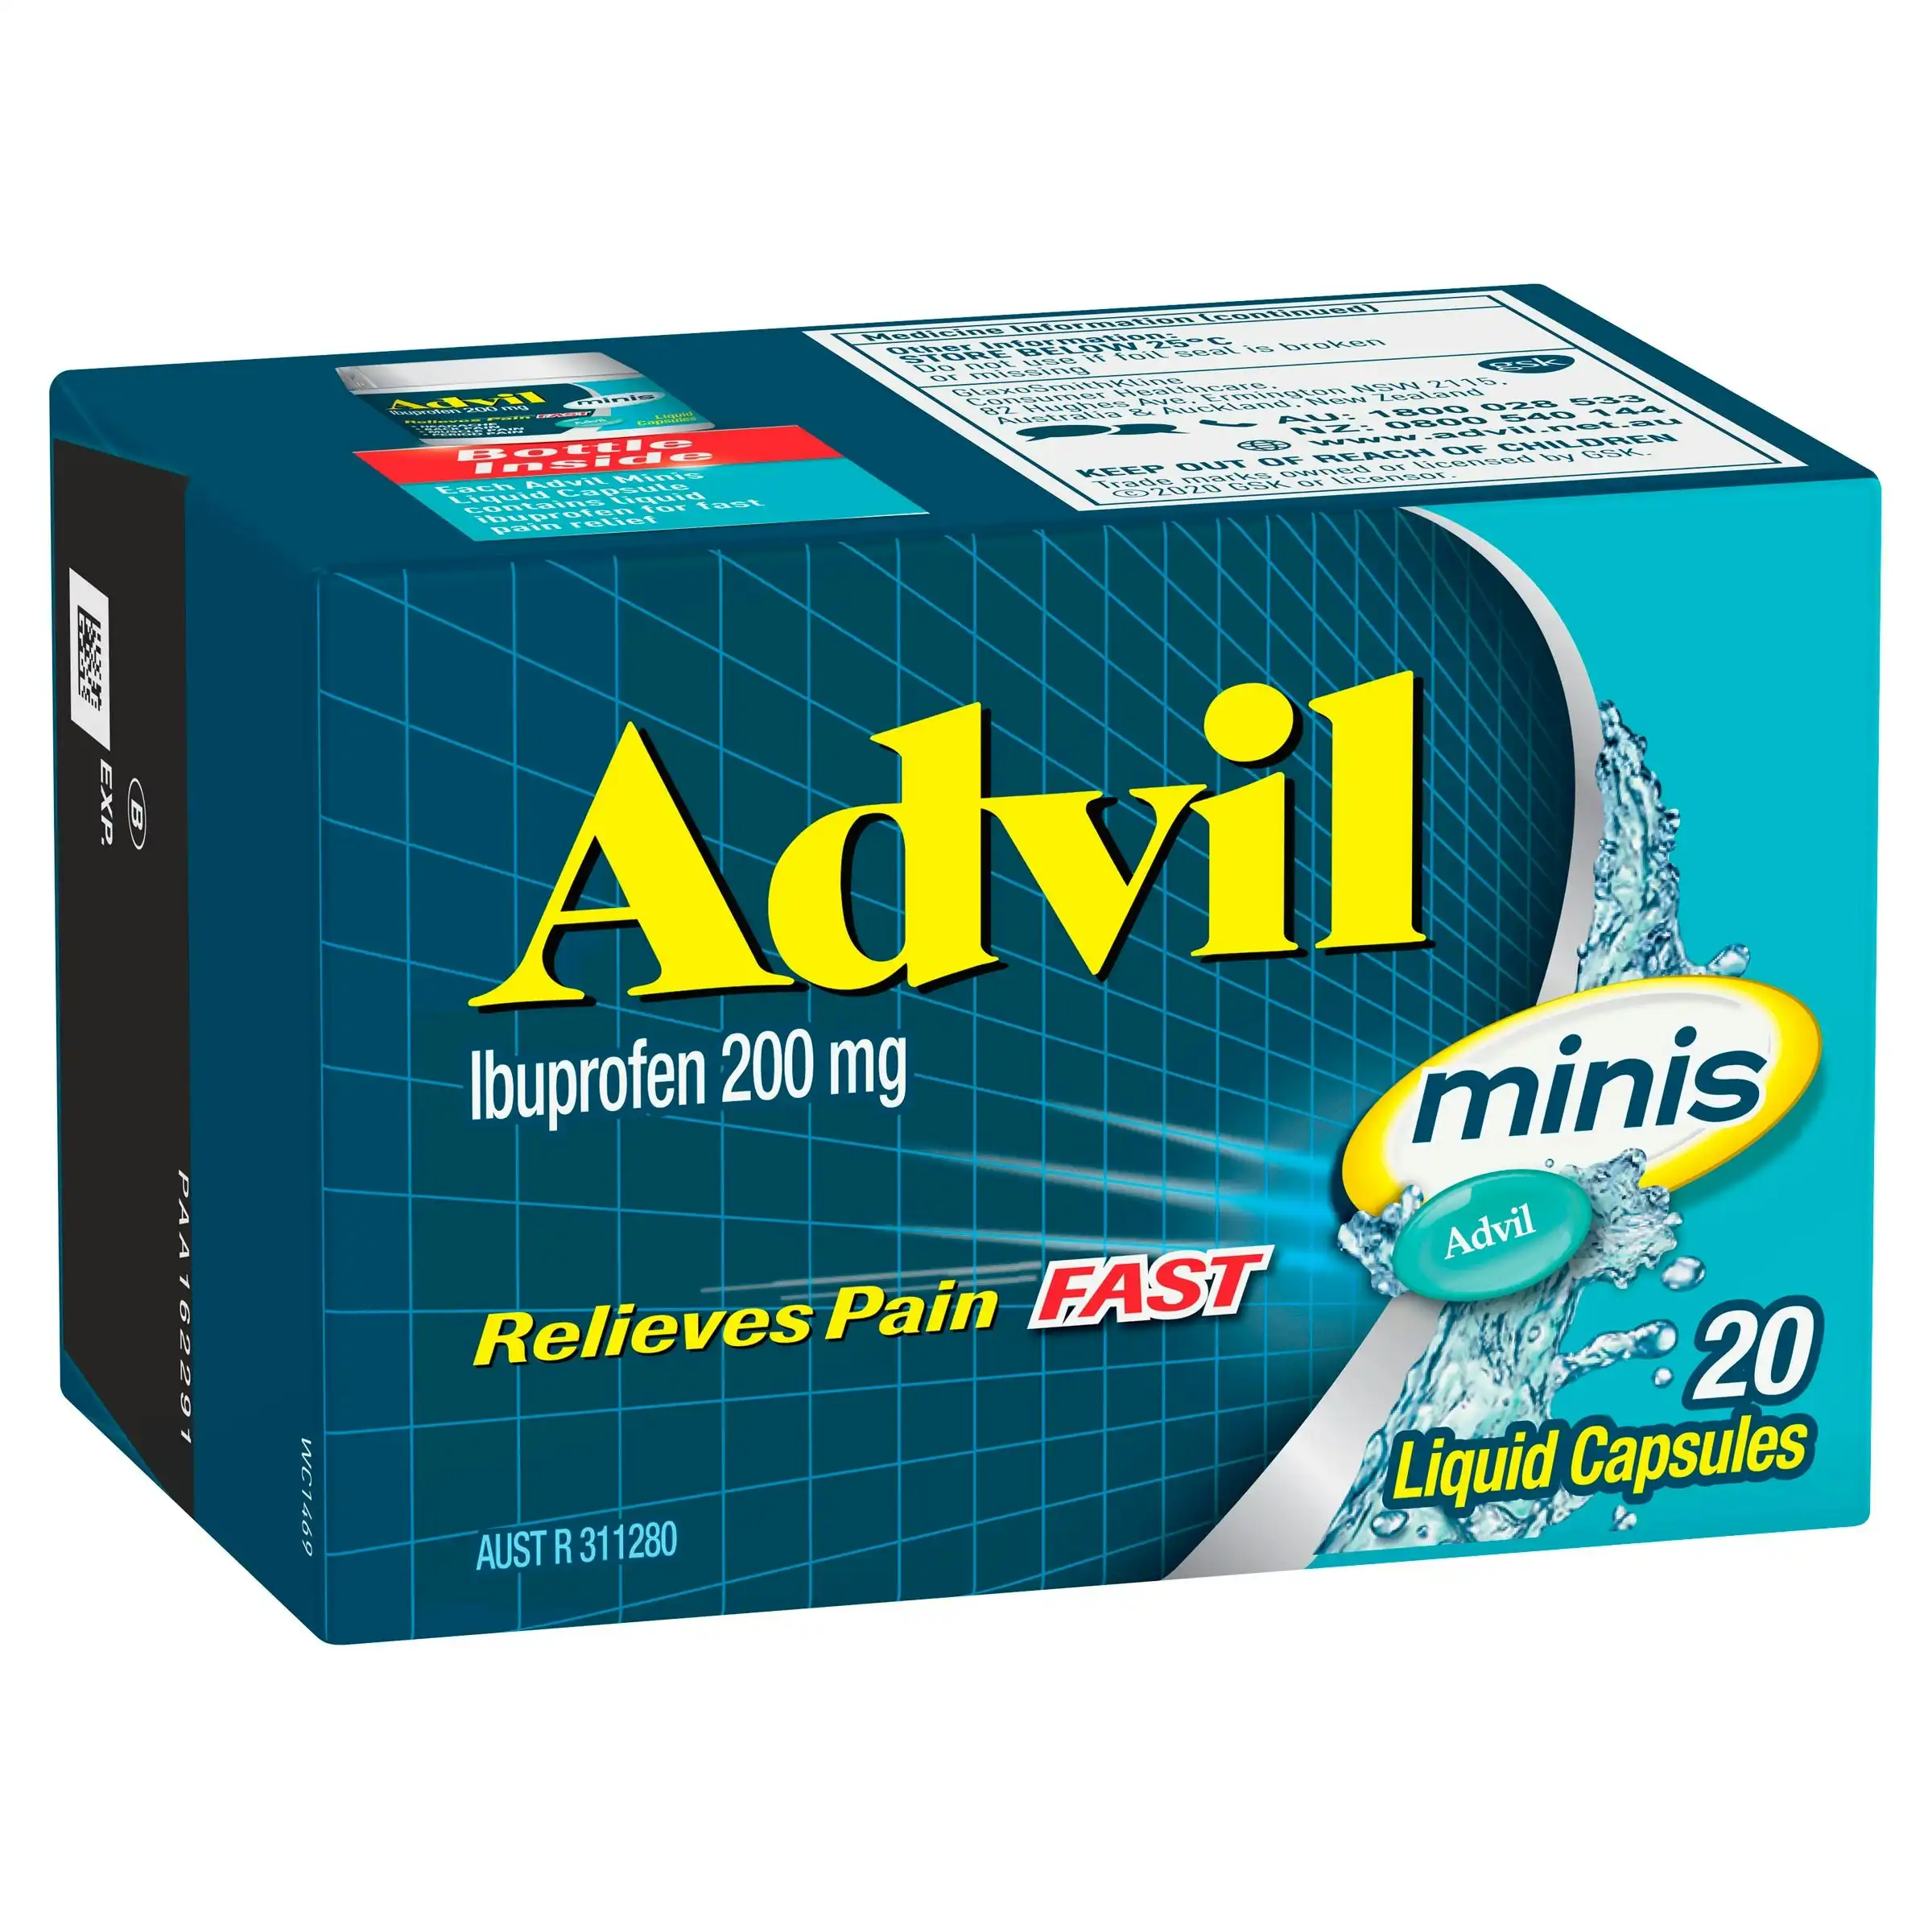 Advil Minis Liquid 20 Capsules